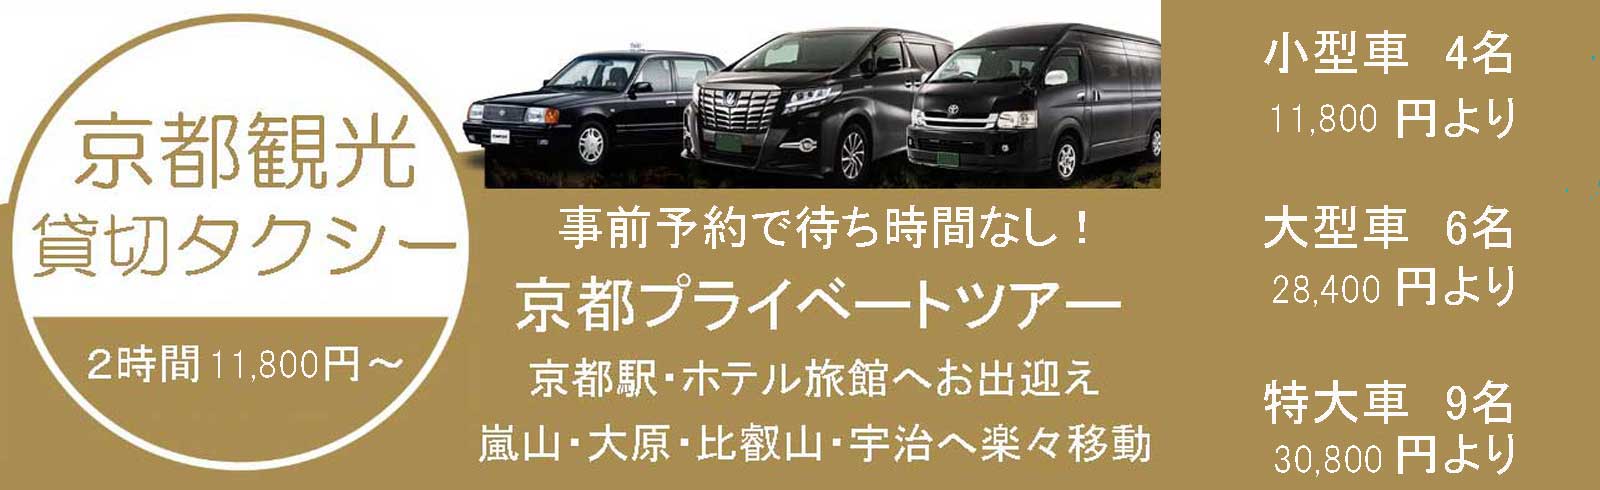 Jps京都観光貸切タクシー予約センター 観光タクシーでめぐる京都フリープラン